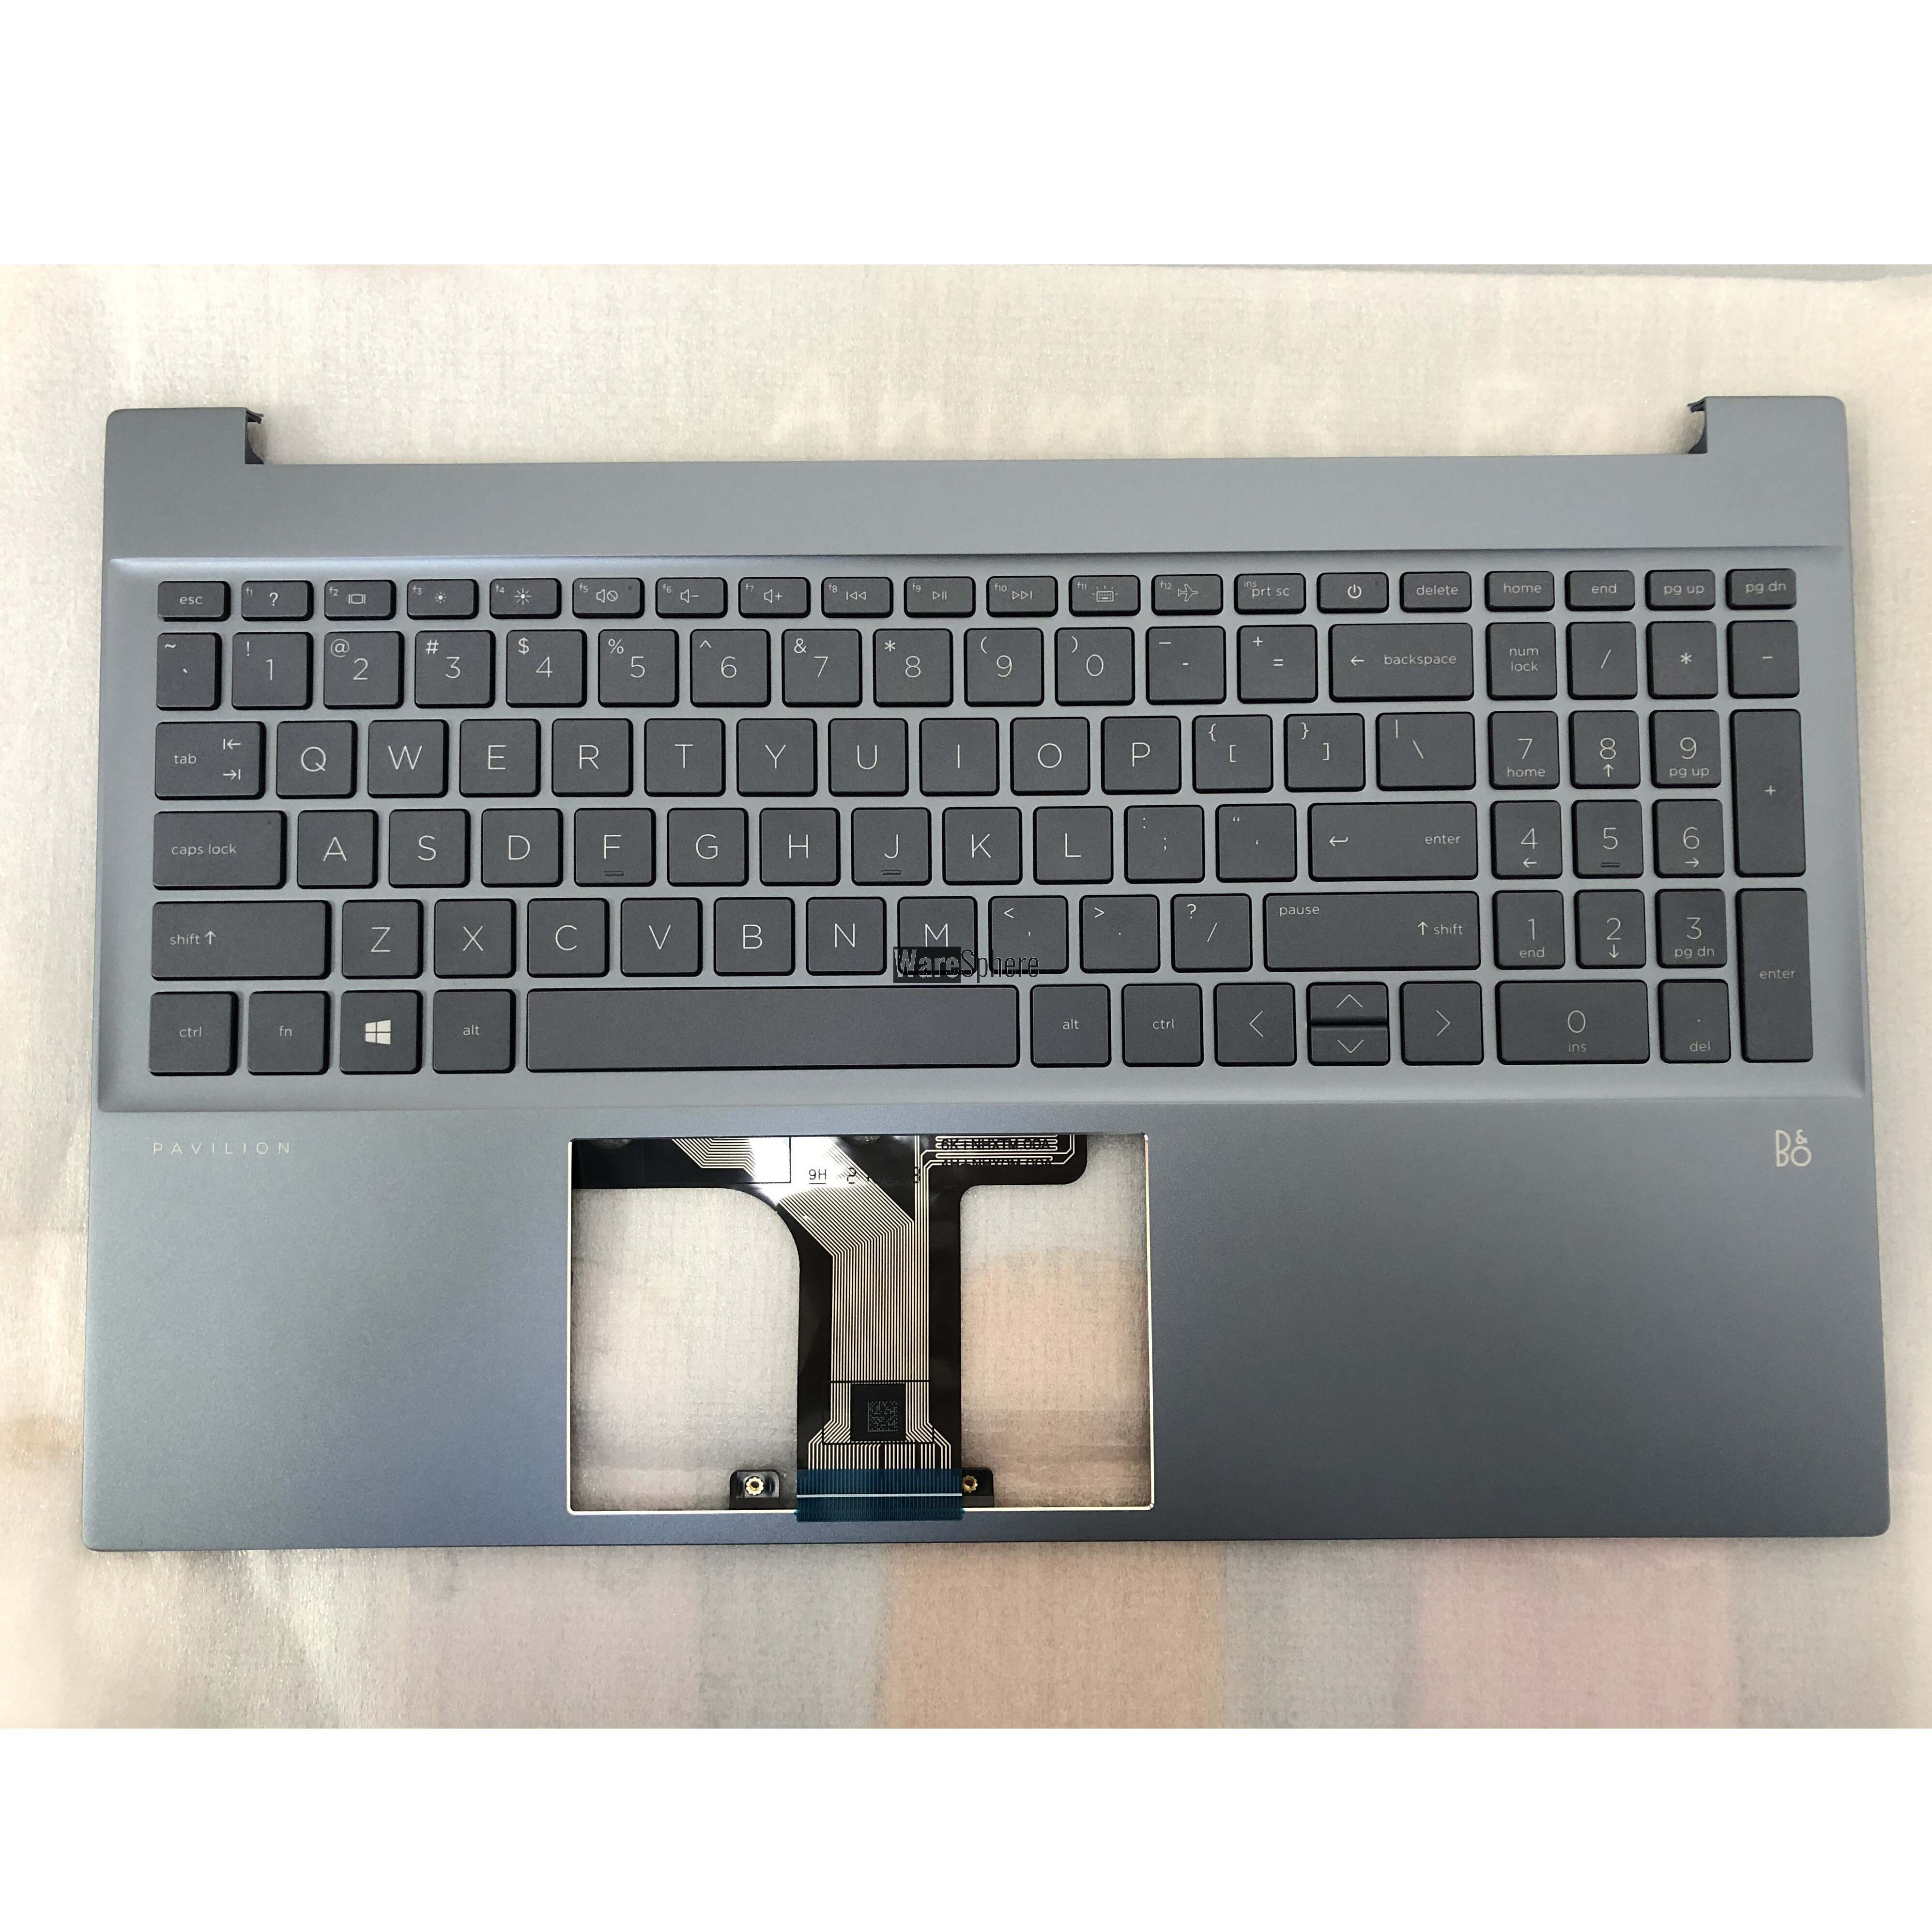 Top Cover Upper Case for HP Pavilion 15-EG Without Fingerprint Hole With Backlit Keyboard M08920-001 54G7HTATP70 Fog Blue